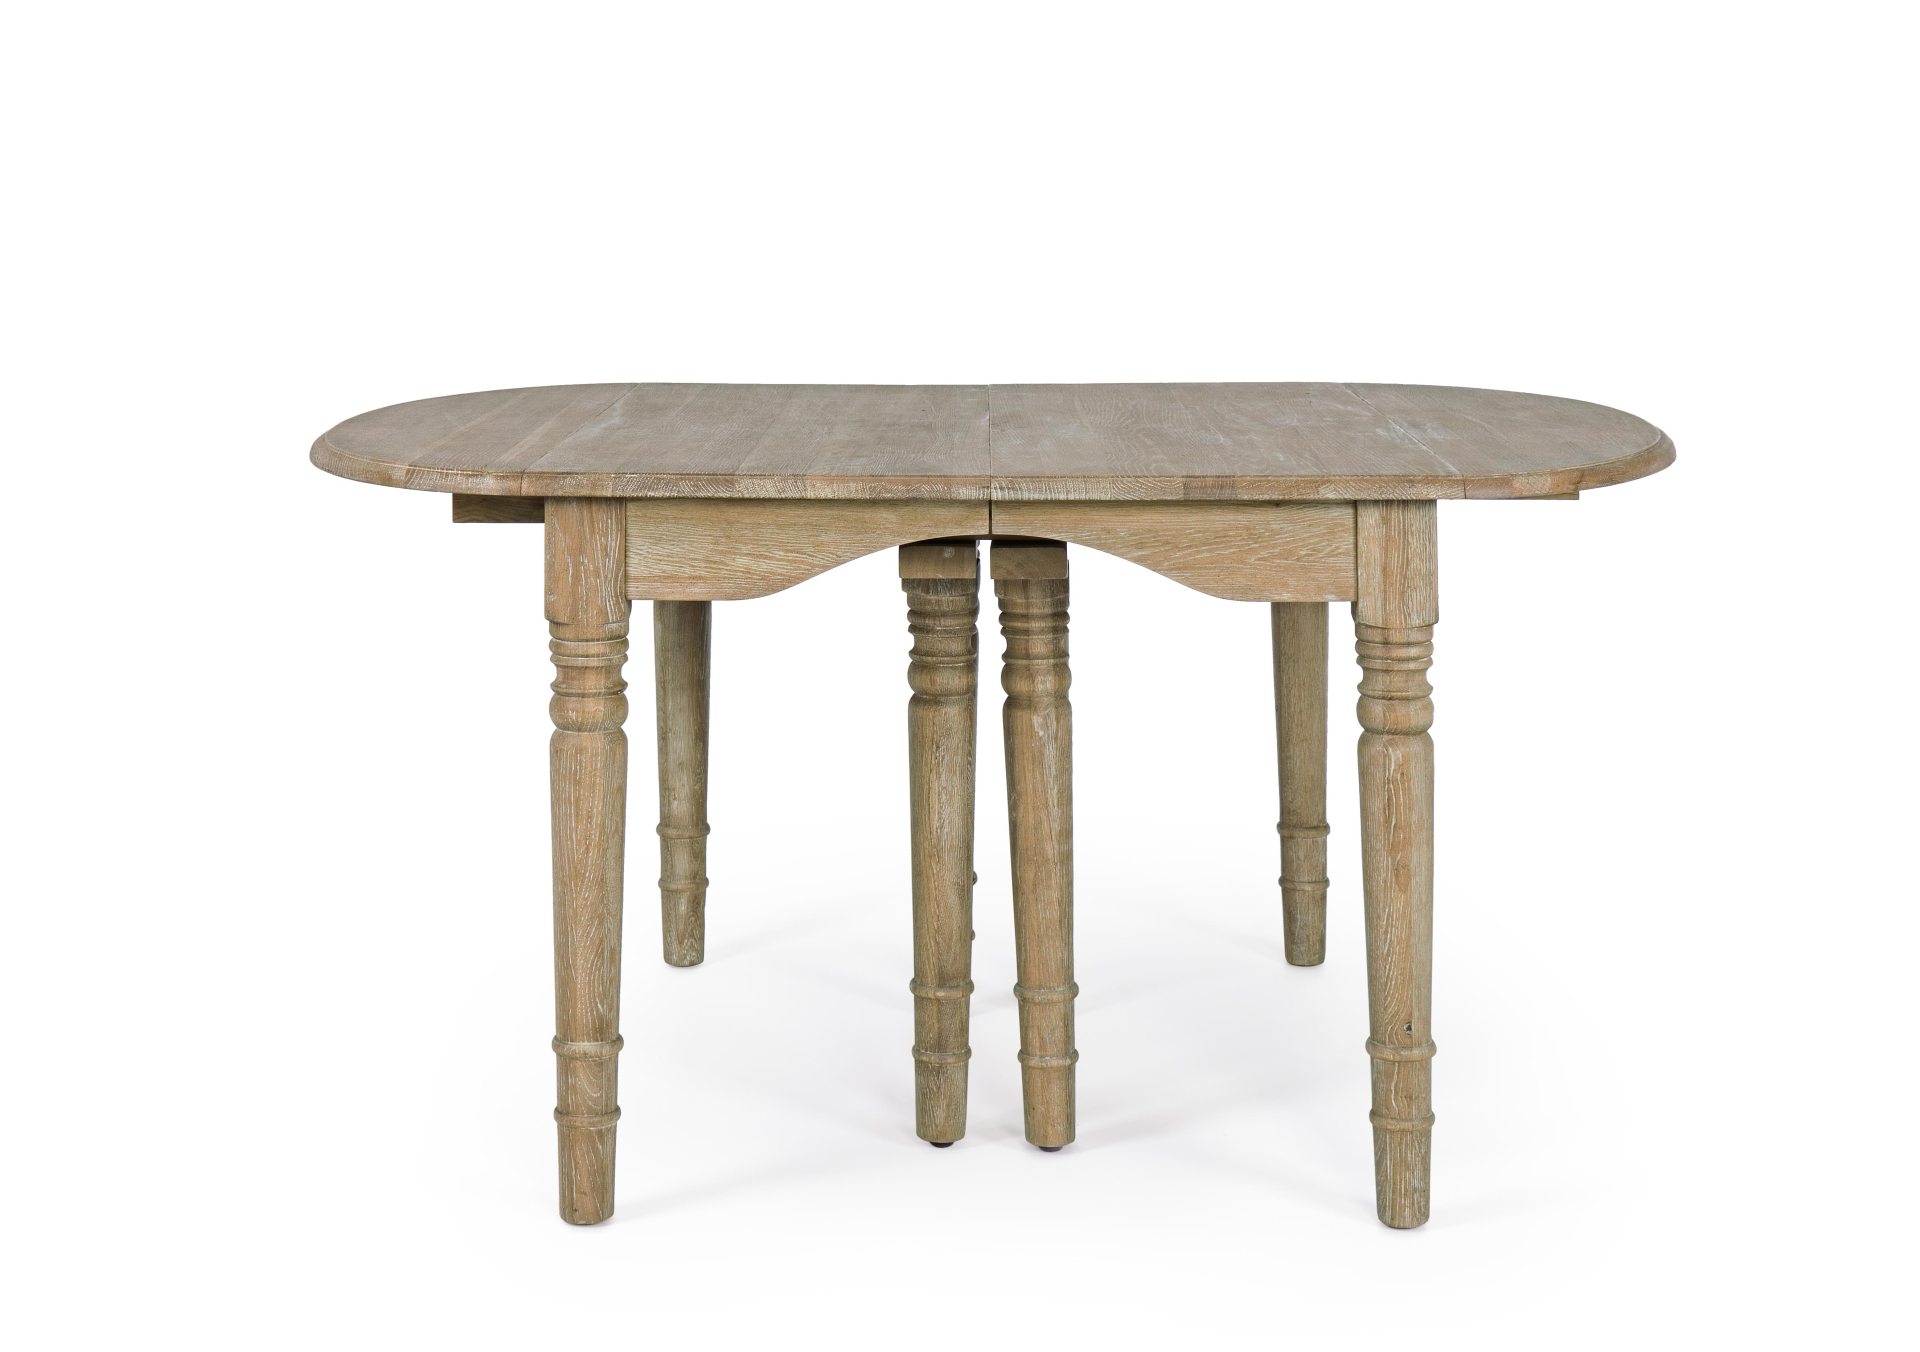 Der Esstisch Bedford überzeugt mit seinem klassischem Design. Gefertigt wurde er aus Eichenholz, welches einen natürlichen Farbton besitzt. Der Tisch ist ausziehbar von einer Länge von 152 cm auf 382 cm.